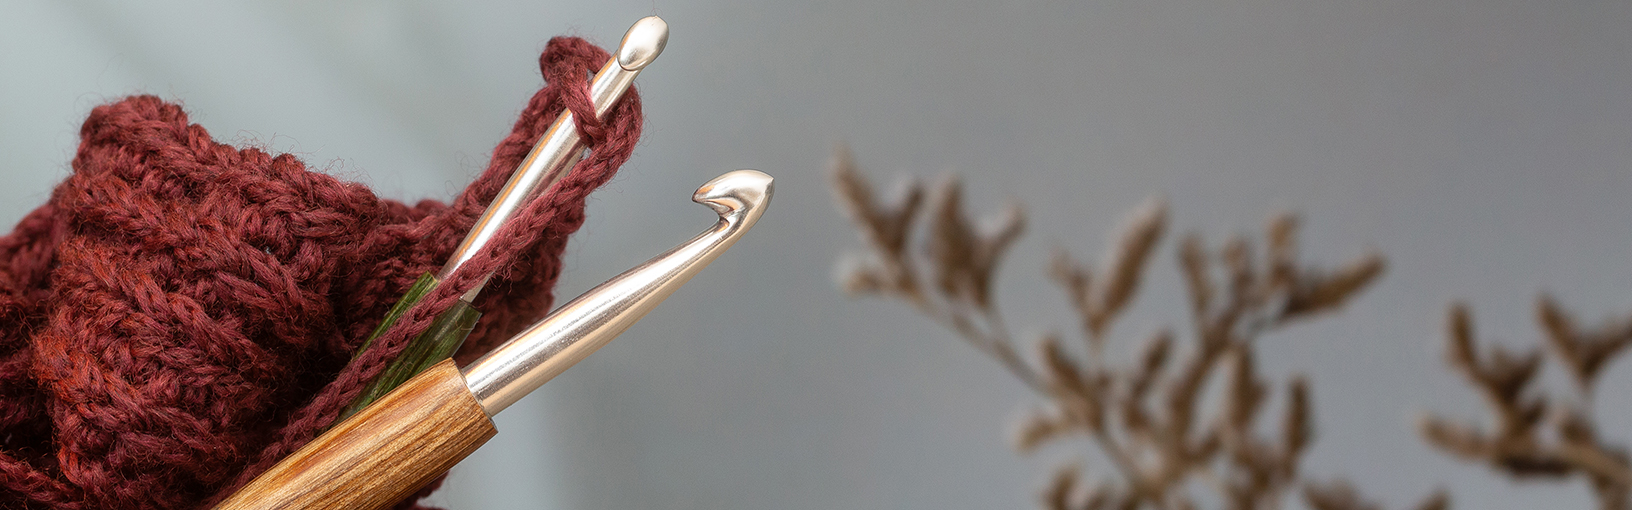 Visokokvalitetne pređe za pletenje, kukičanje i filc Lana Grossa Vune | Carapevuna | Landlust